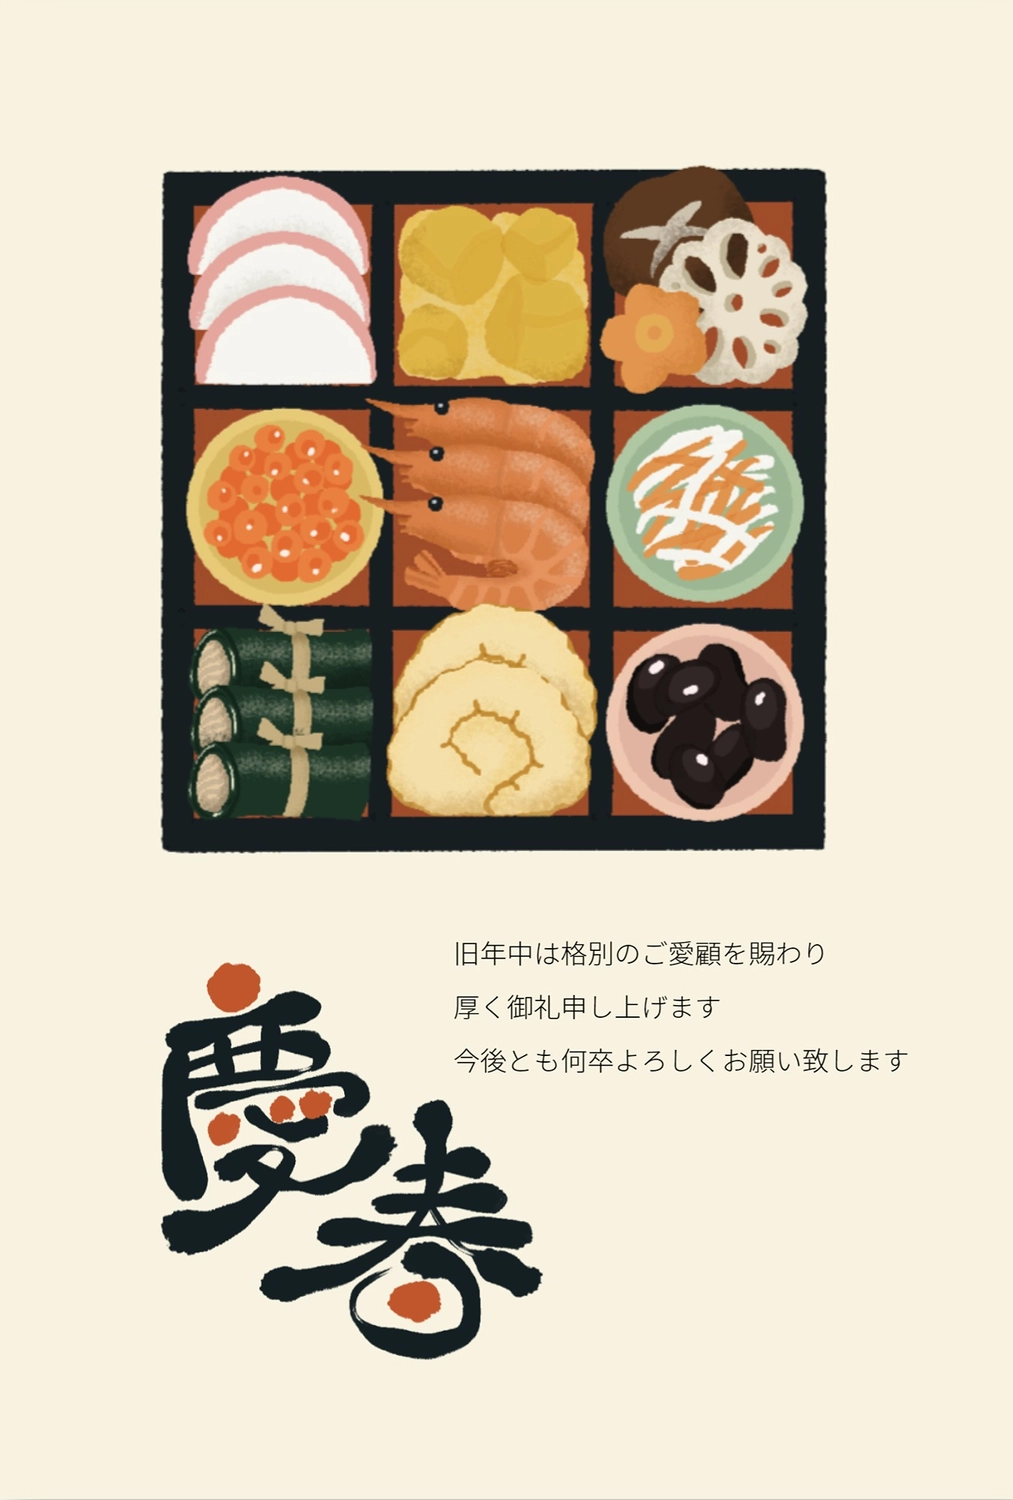 お節の年賀状　縦, greetings, Color background, Happy New Year, New Year Card template